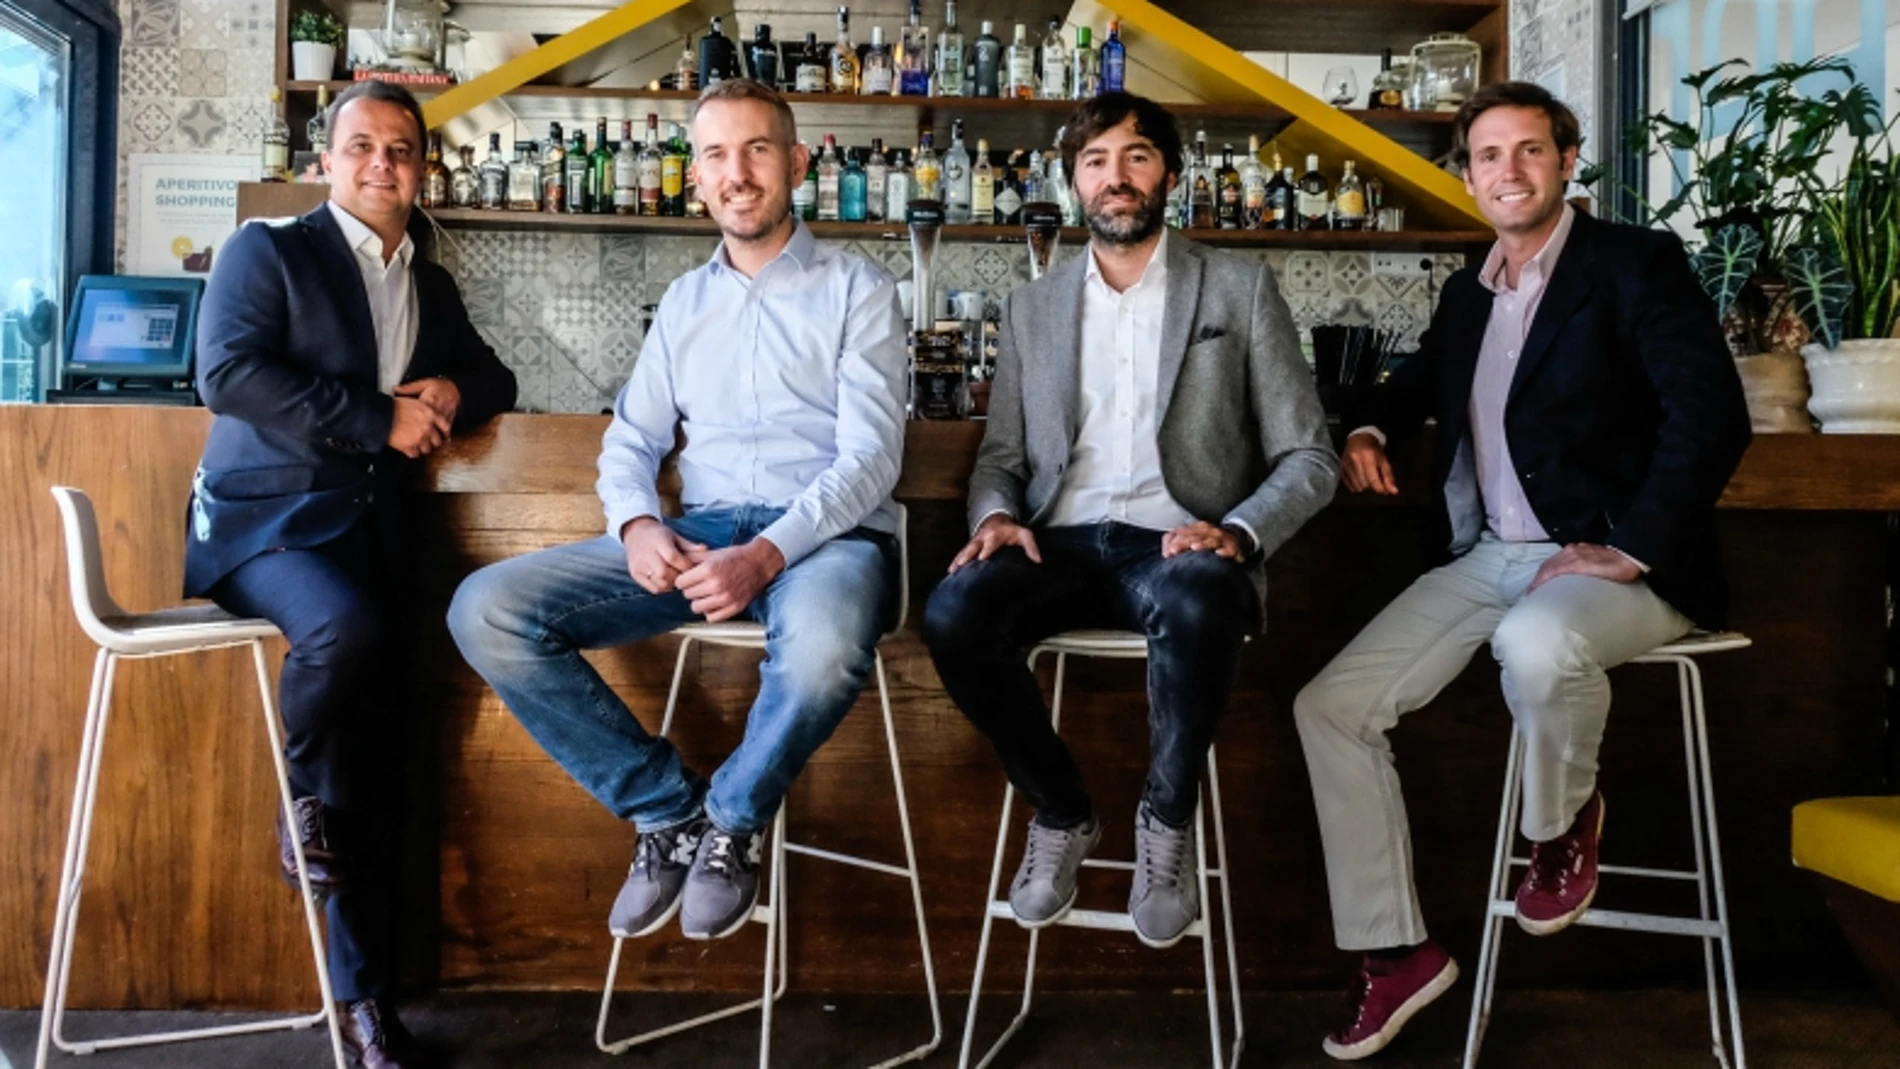 De izquierda a derecha: Olivier Bernon, CEO de Up SPAIN, y los creadores de la App, Matthieu Heusch, Jorge Bodas y Borja Serra